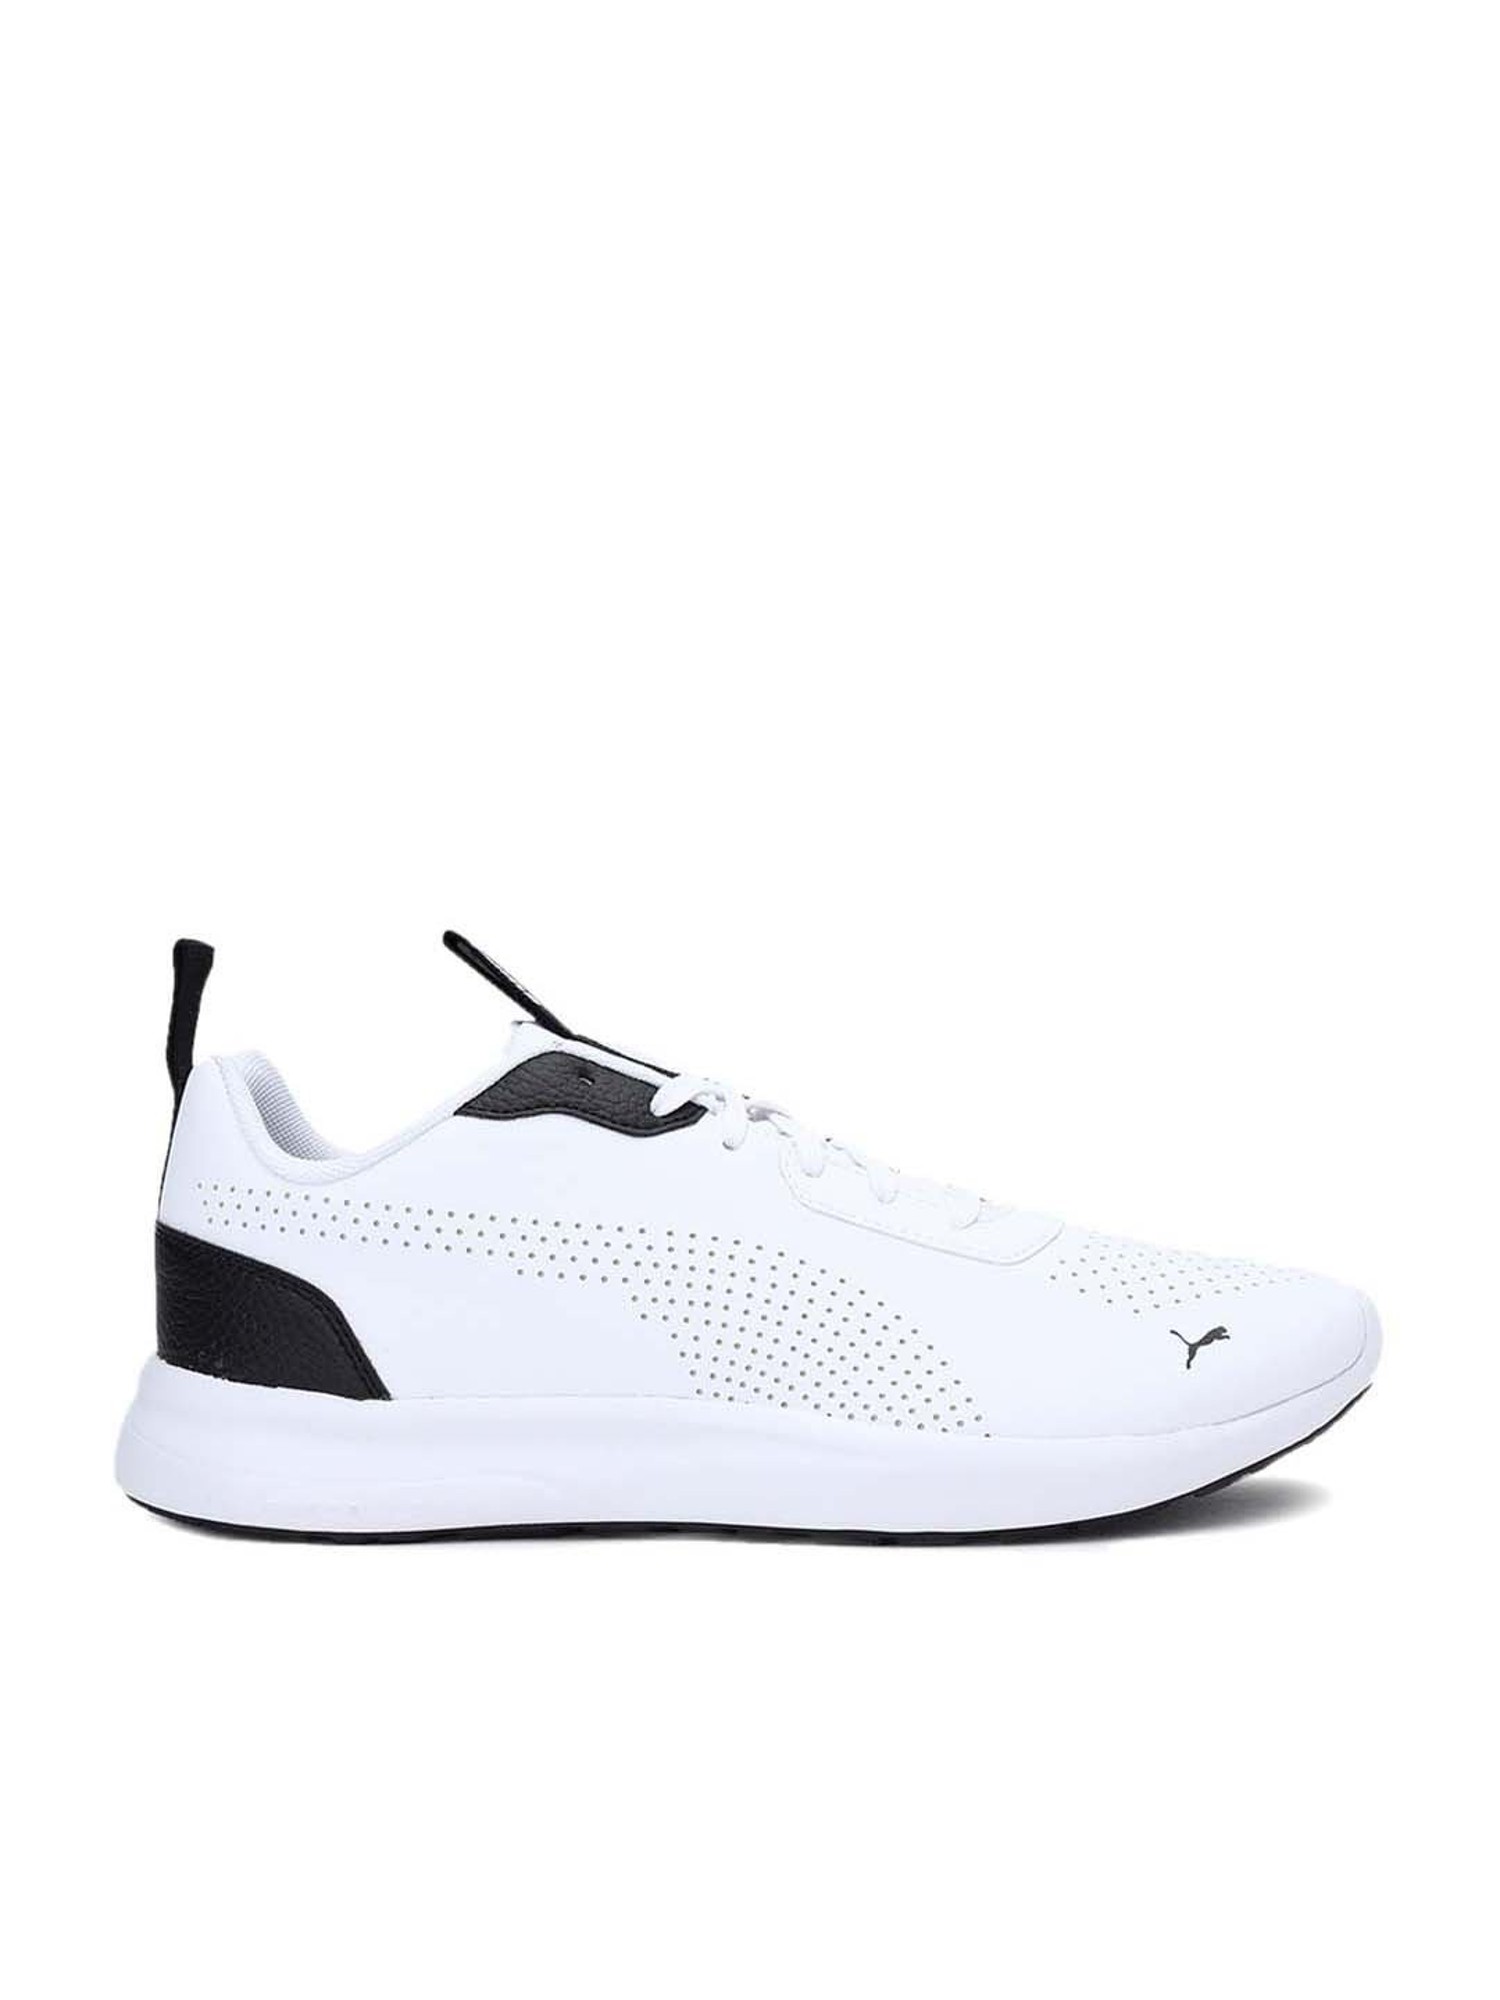 Puma Shoes All White | estudioespositoymiguel.com.ar